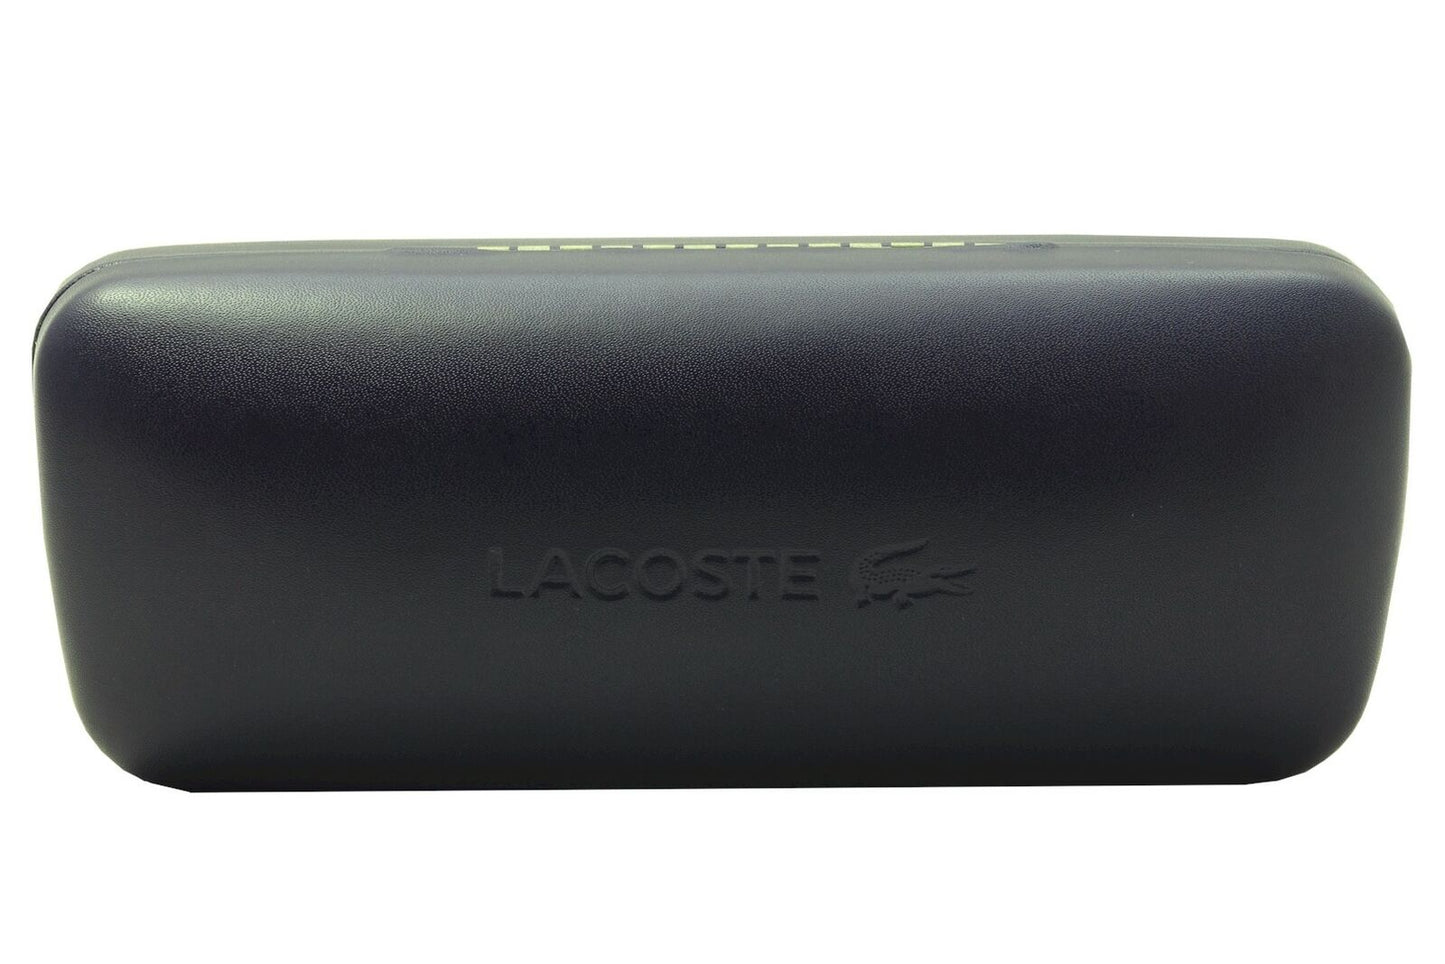 Lacoste L971S-234 52mm New Sunglasses